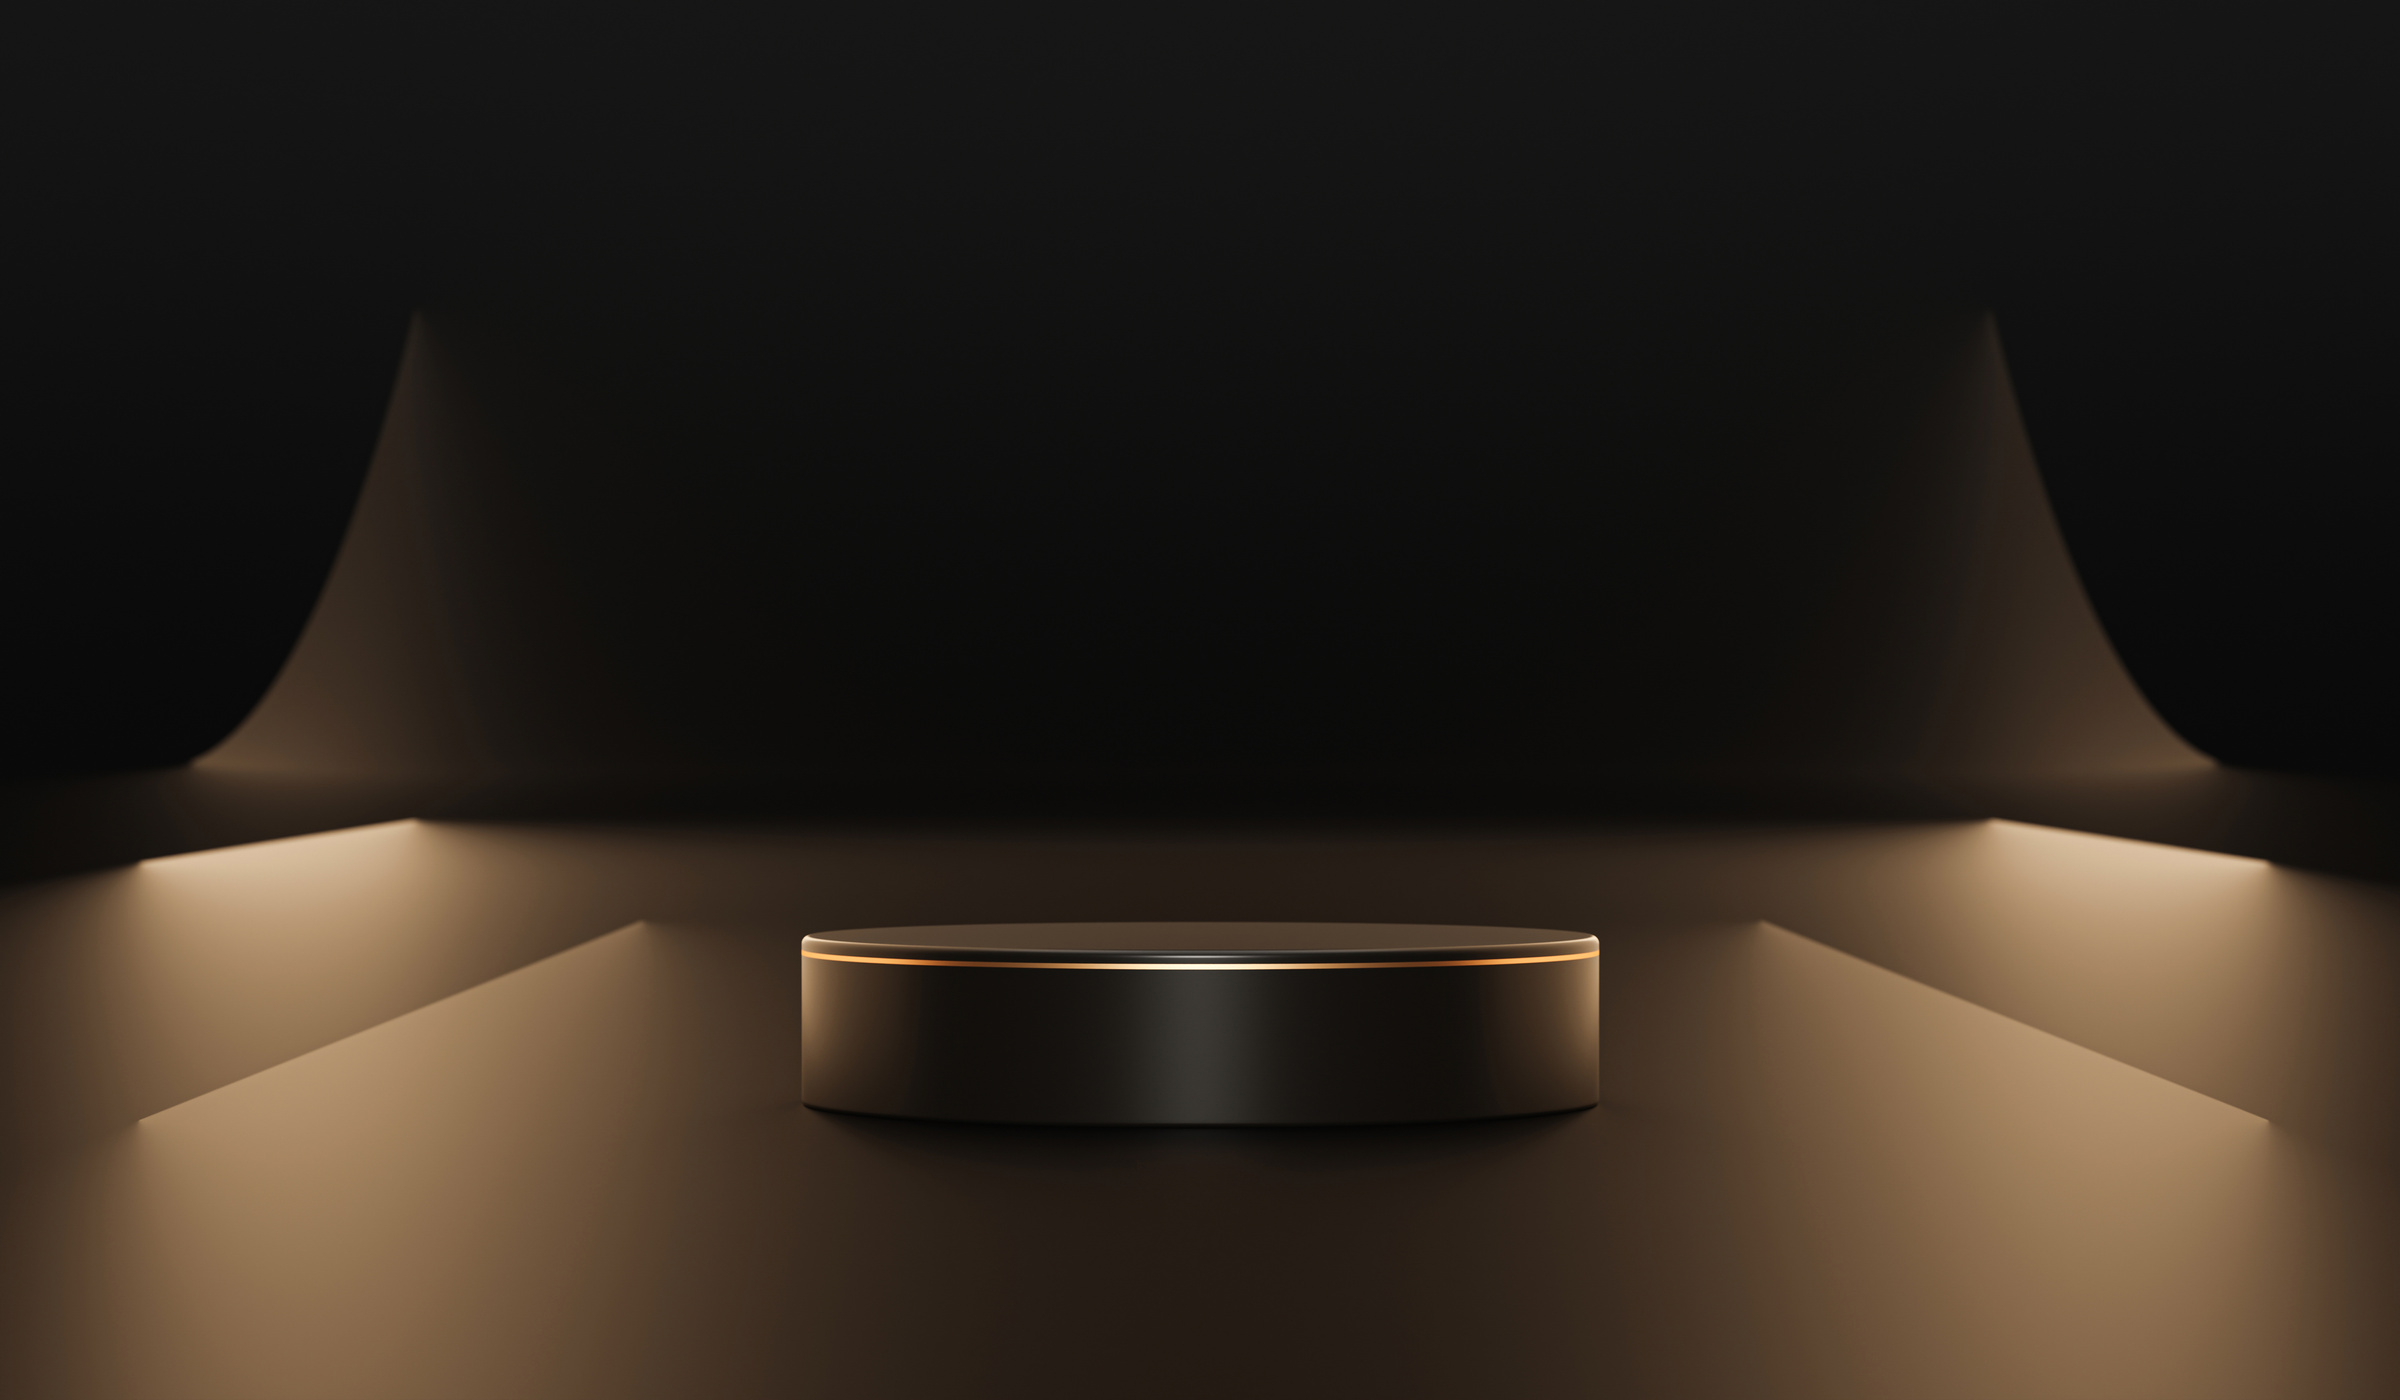 Black stage luxury gold podium on empty dark background